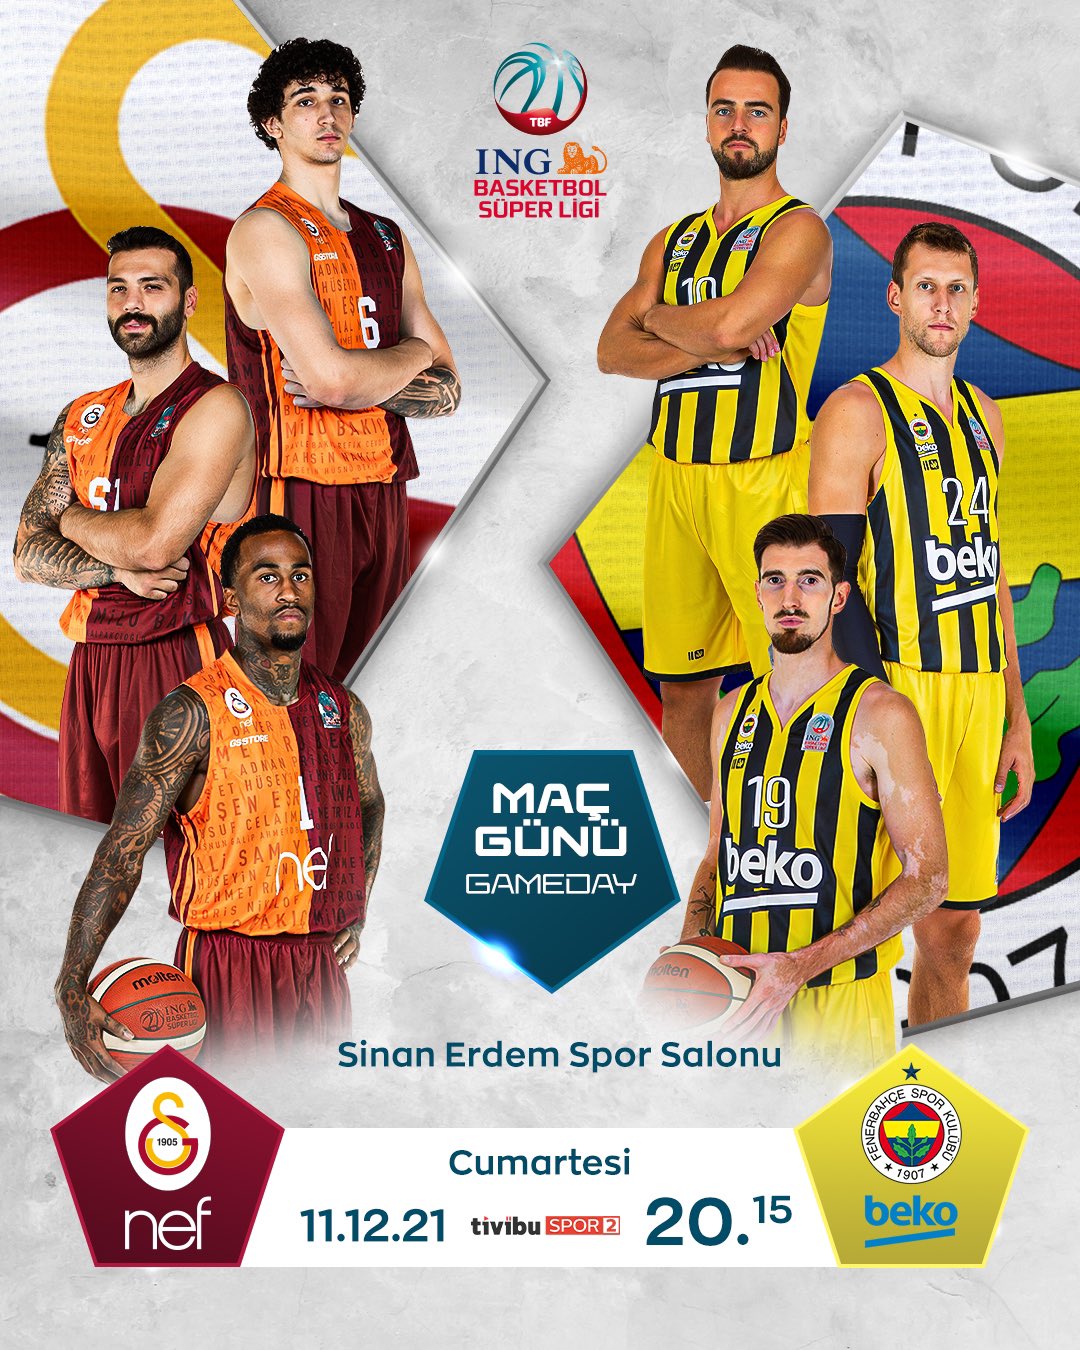 Galatasaray NEF-Fenerbahçe Beko Maçına Özel ING Basketbol Süper Ligi Resmi Twitter Hesabının Hazırladığı Maç Görseli